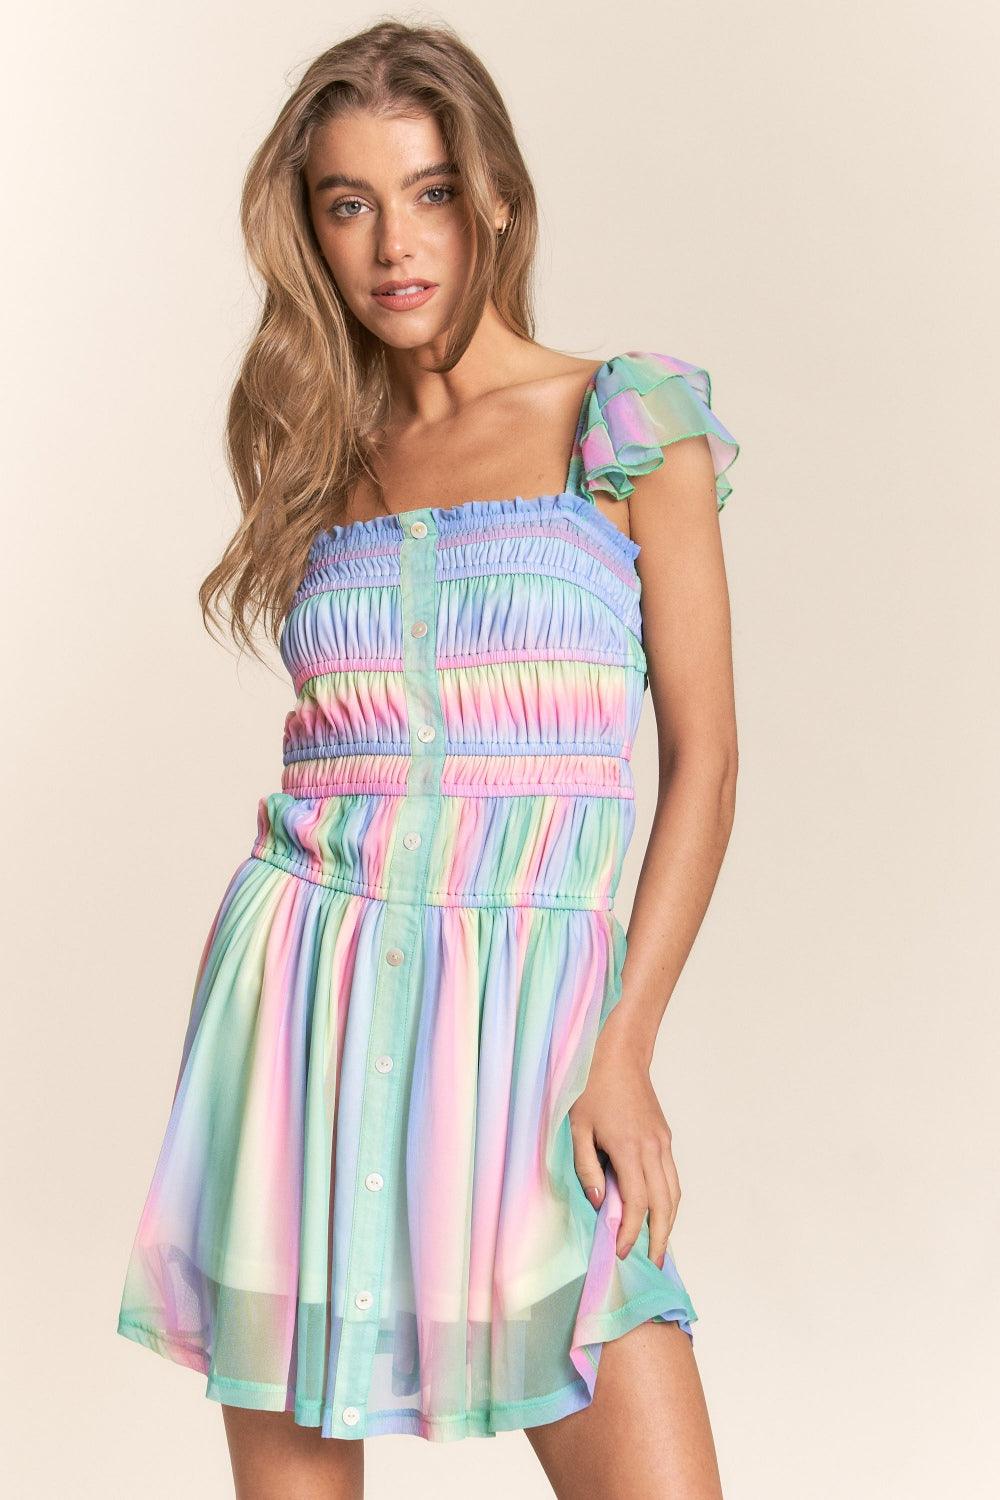 J.NNA Rainbow Smocked Mini Mesh Dress - AMIClubwear